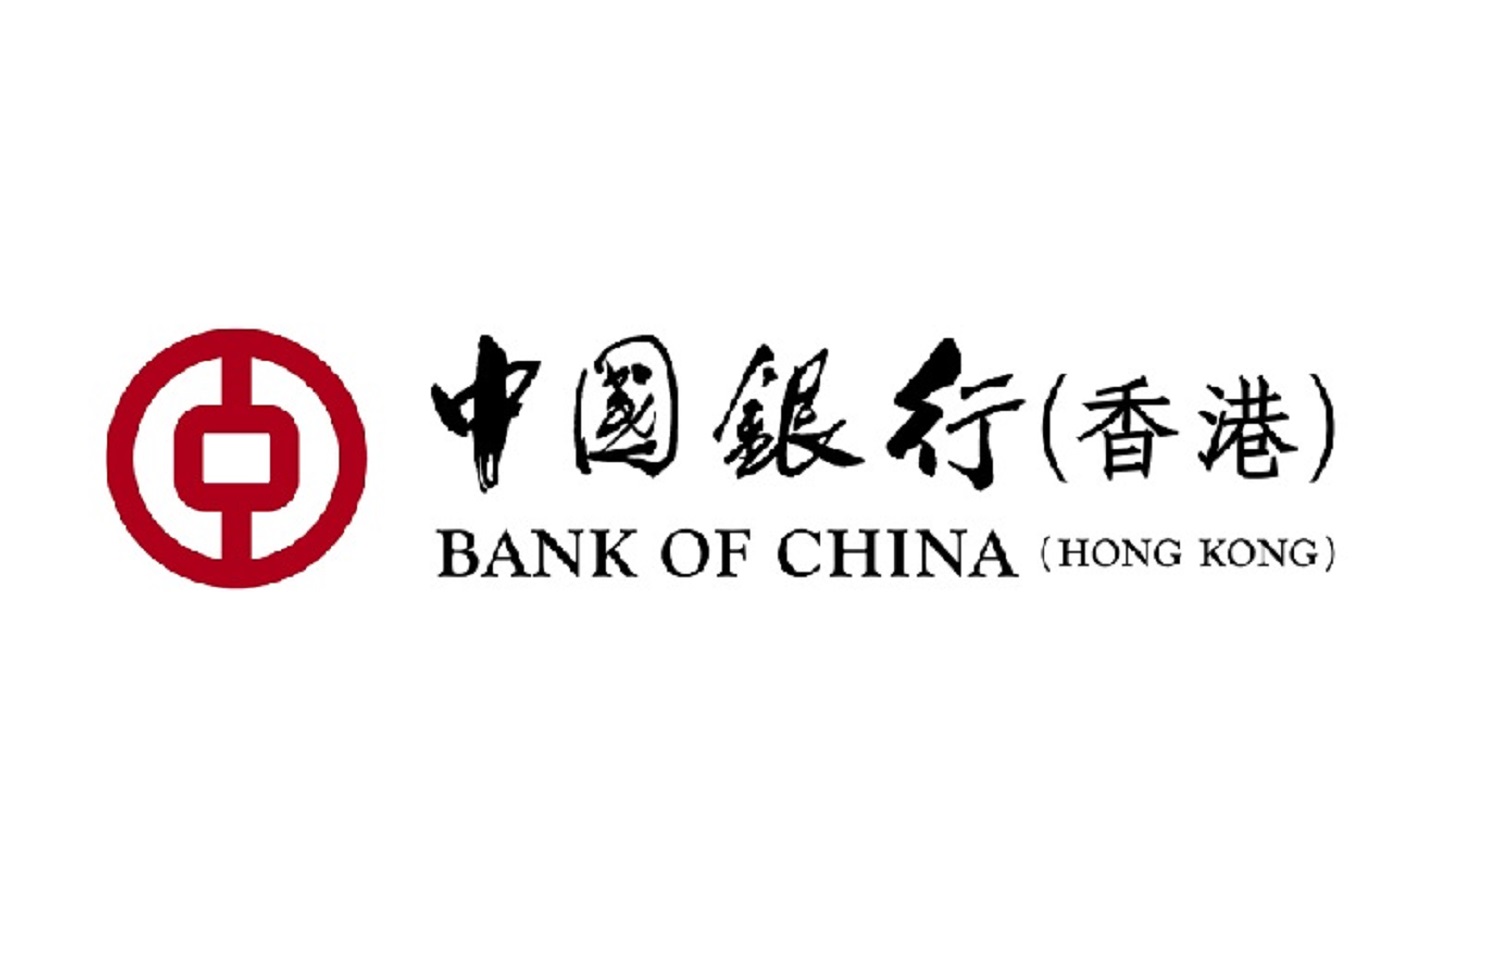 Бэнк оф сайт. Банк Китая. Bank of China логотип. Народный банк Китая. Bank of China печать.